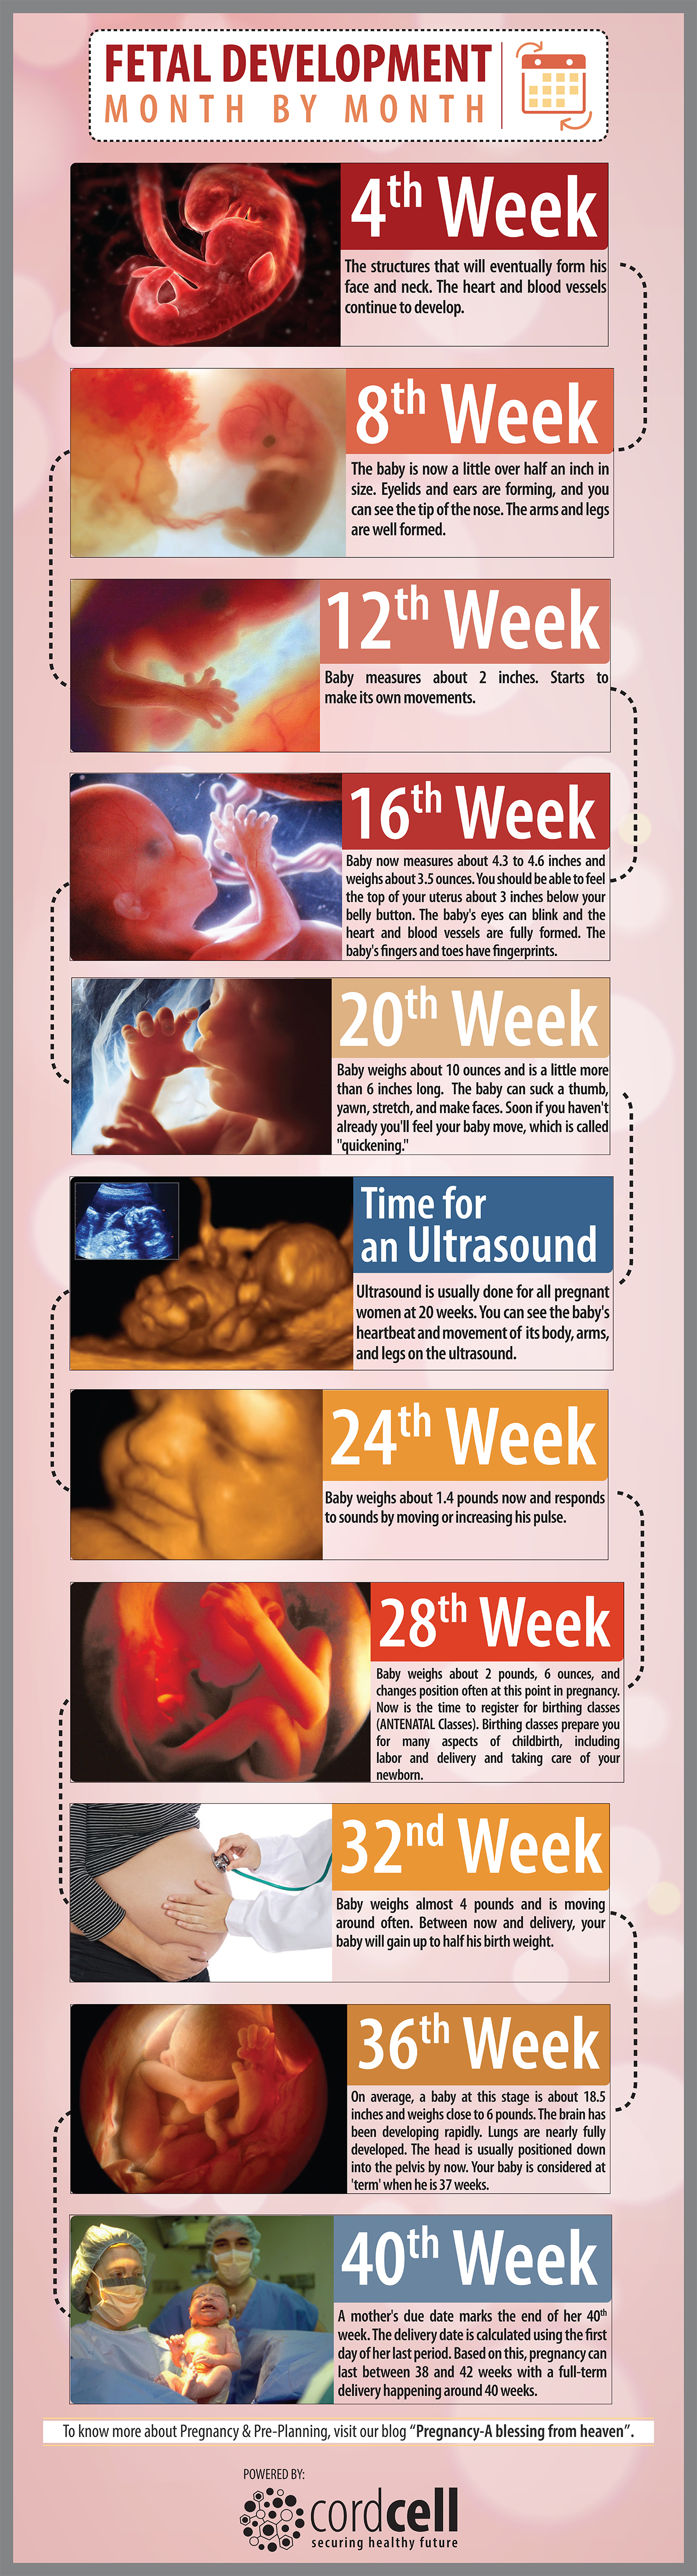 Fetal Development Week By Week The Simplified Guide - vrogue.co